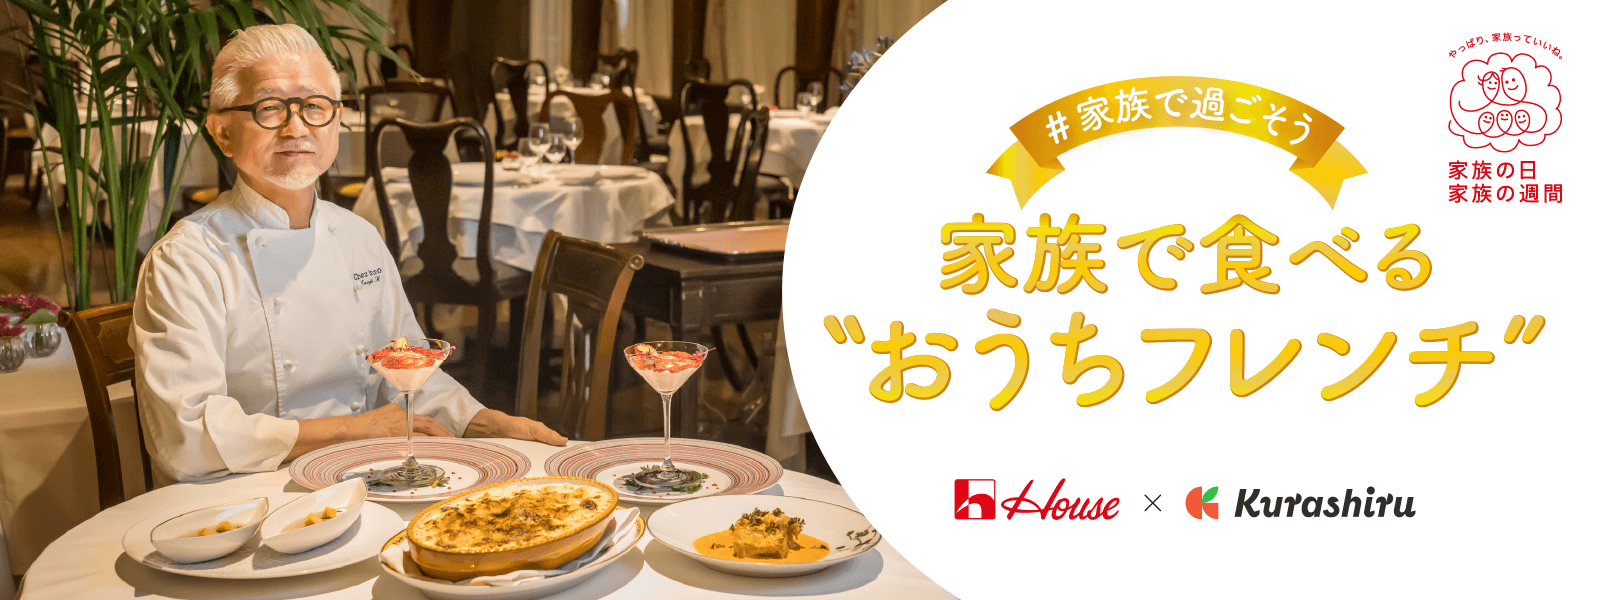 ＃家族で過ごそう 家族で食べる“おうちフレンチ” House × Kurashiru やっぱり家族っていいね。家族の日 家族の週間